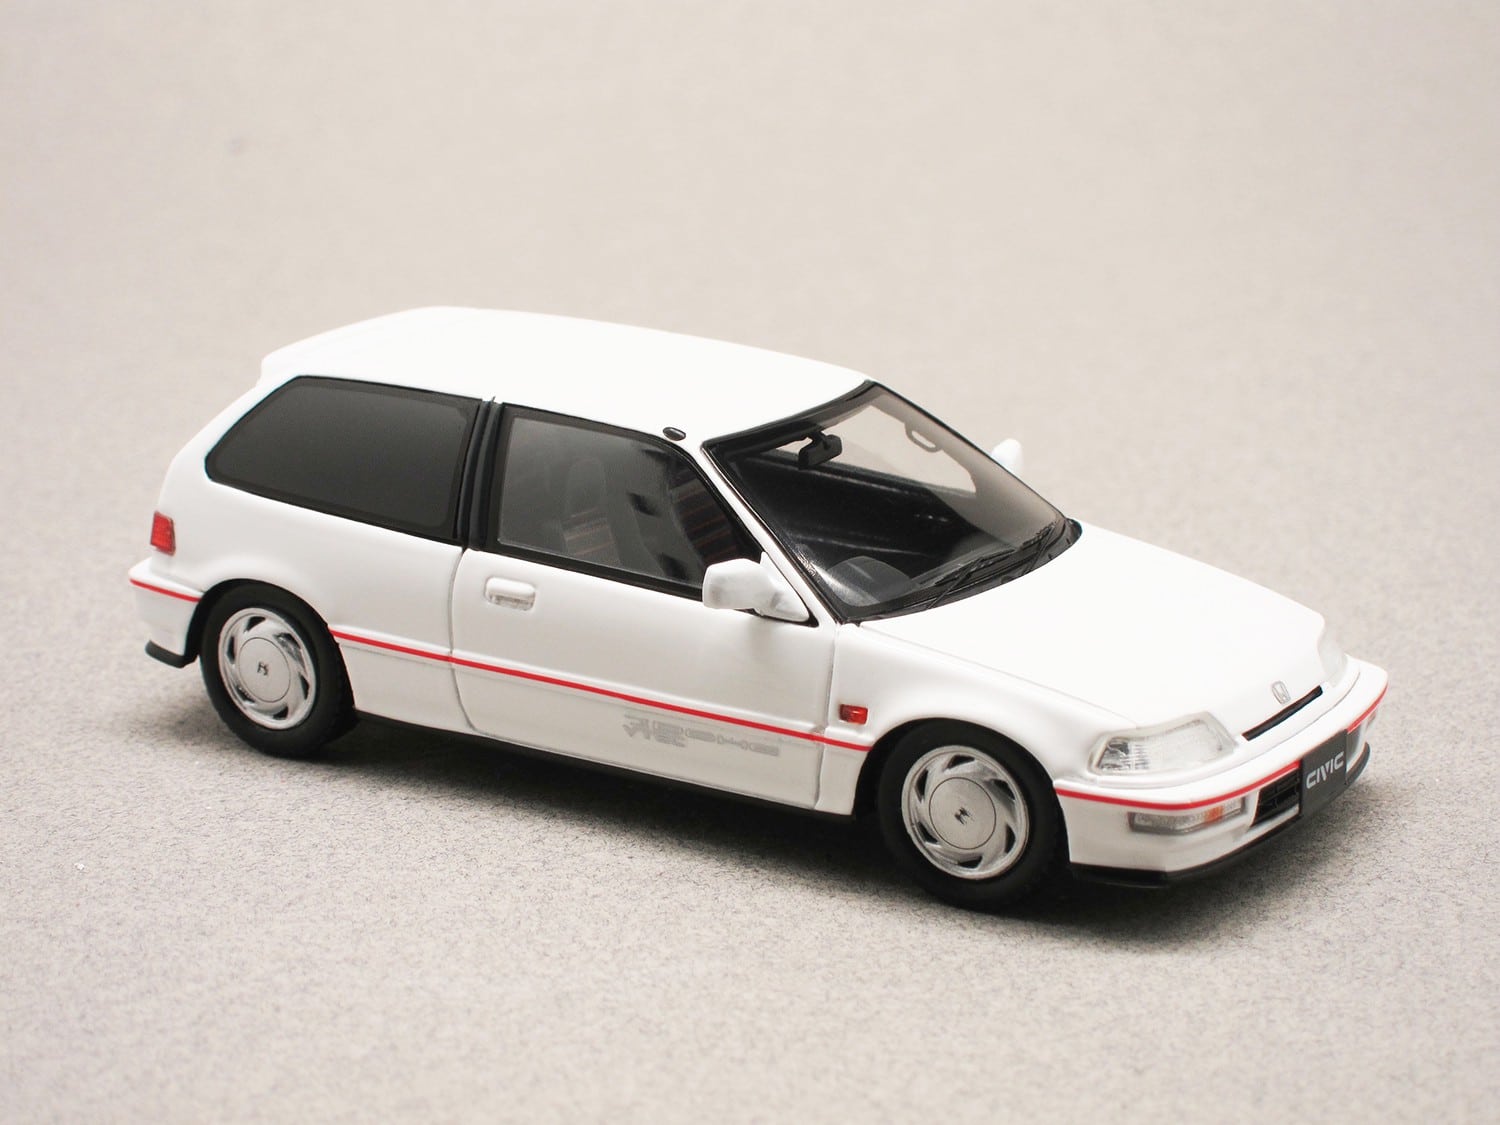 Honda Civic VTEC SiR 1990 (Spark) 1:43 - Minicarweb